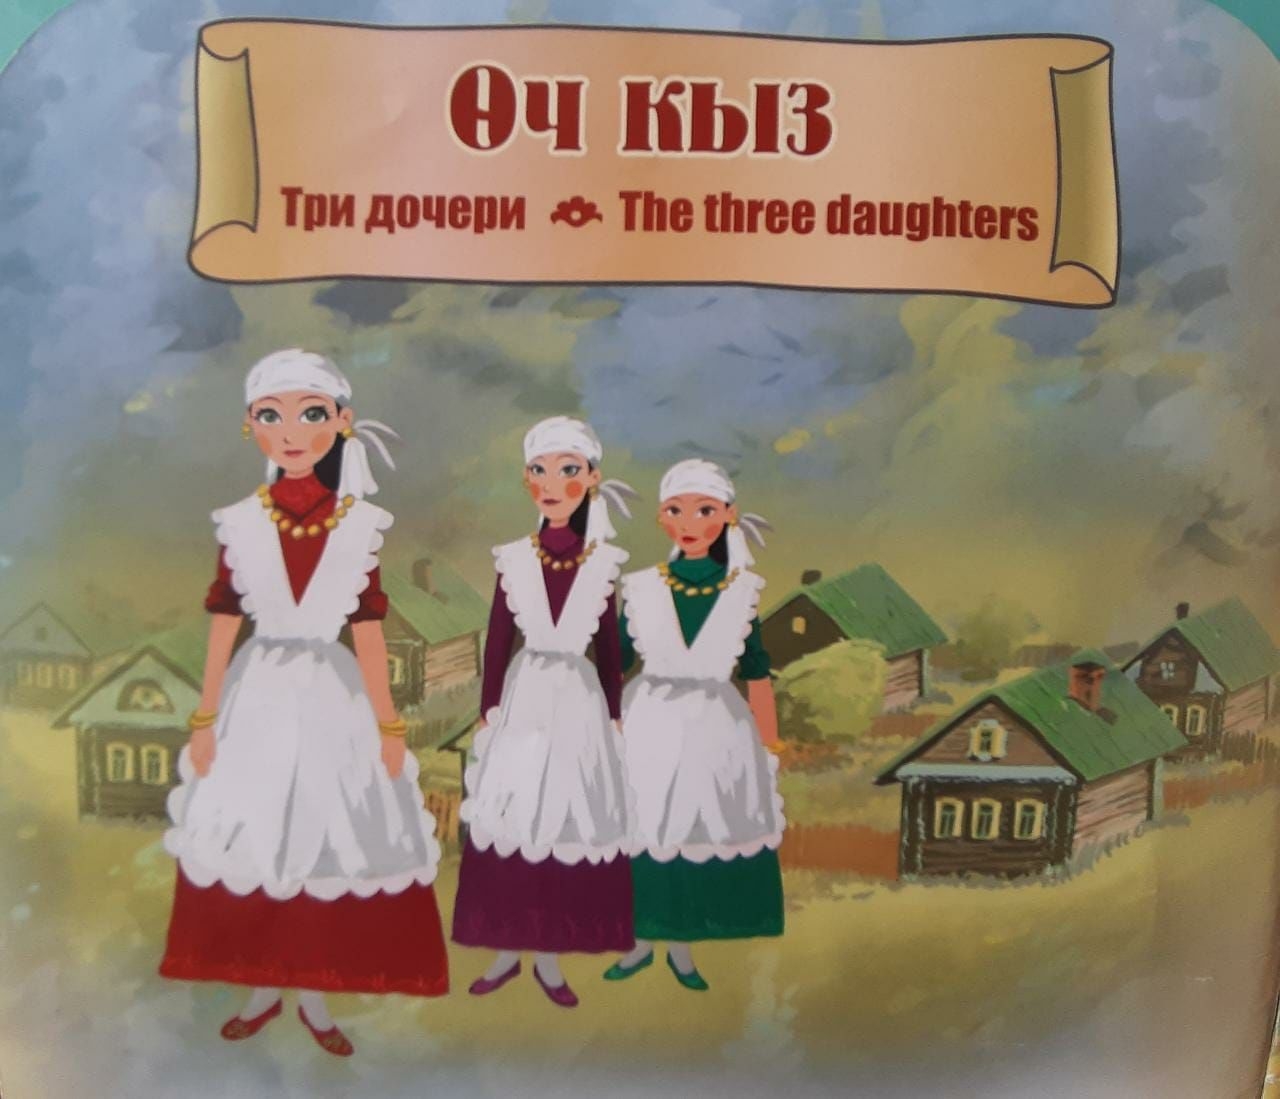 Татарская народная сказка три сестры 2 класс